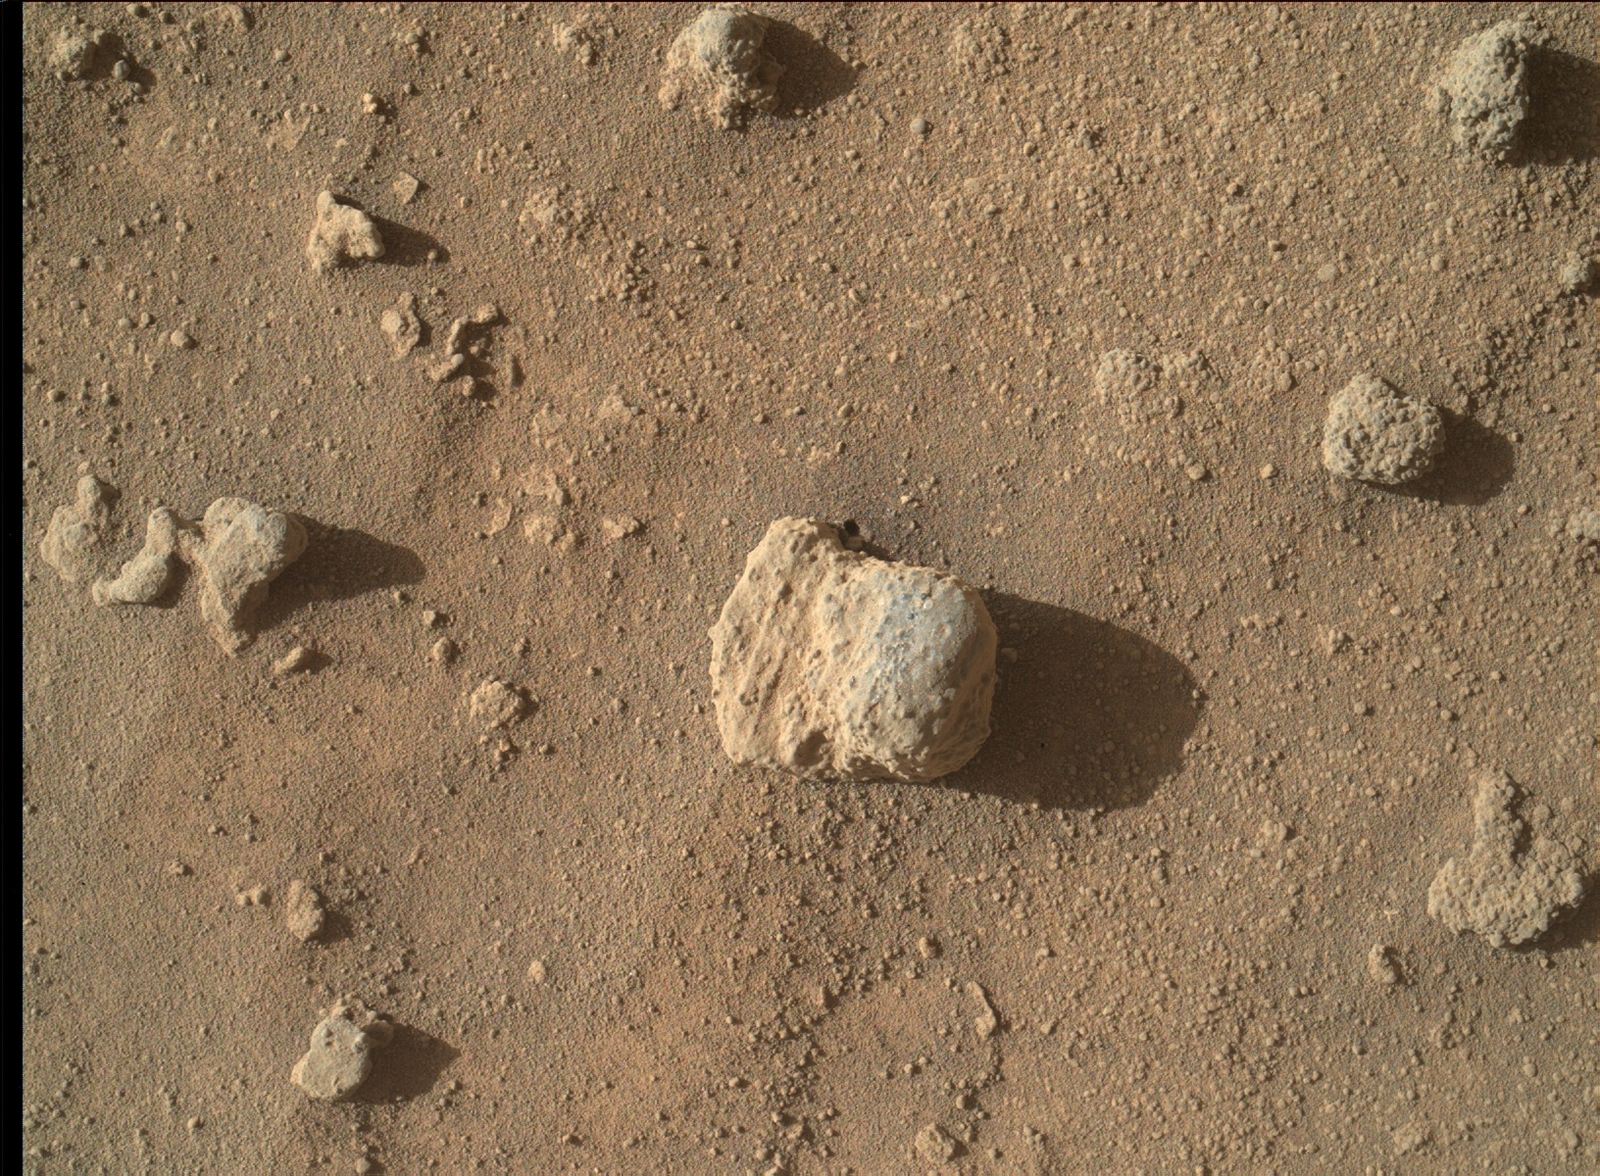 Sandstone Nodule Beside 'Naukluft Plateau' on Mount Sharp, Mars